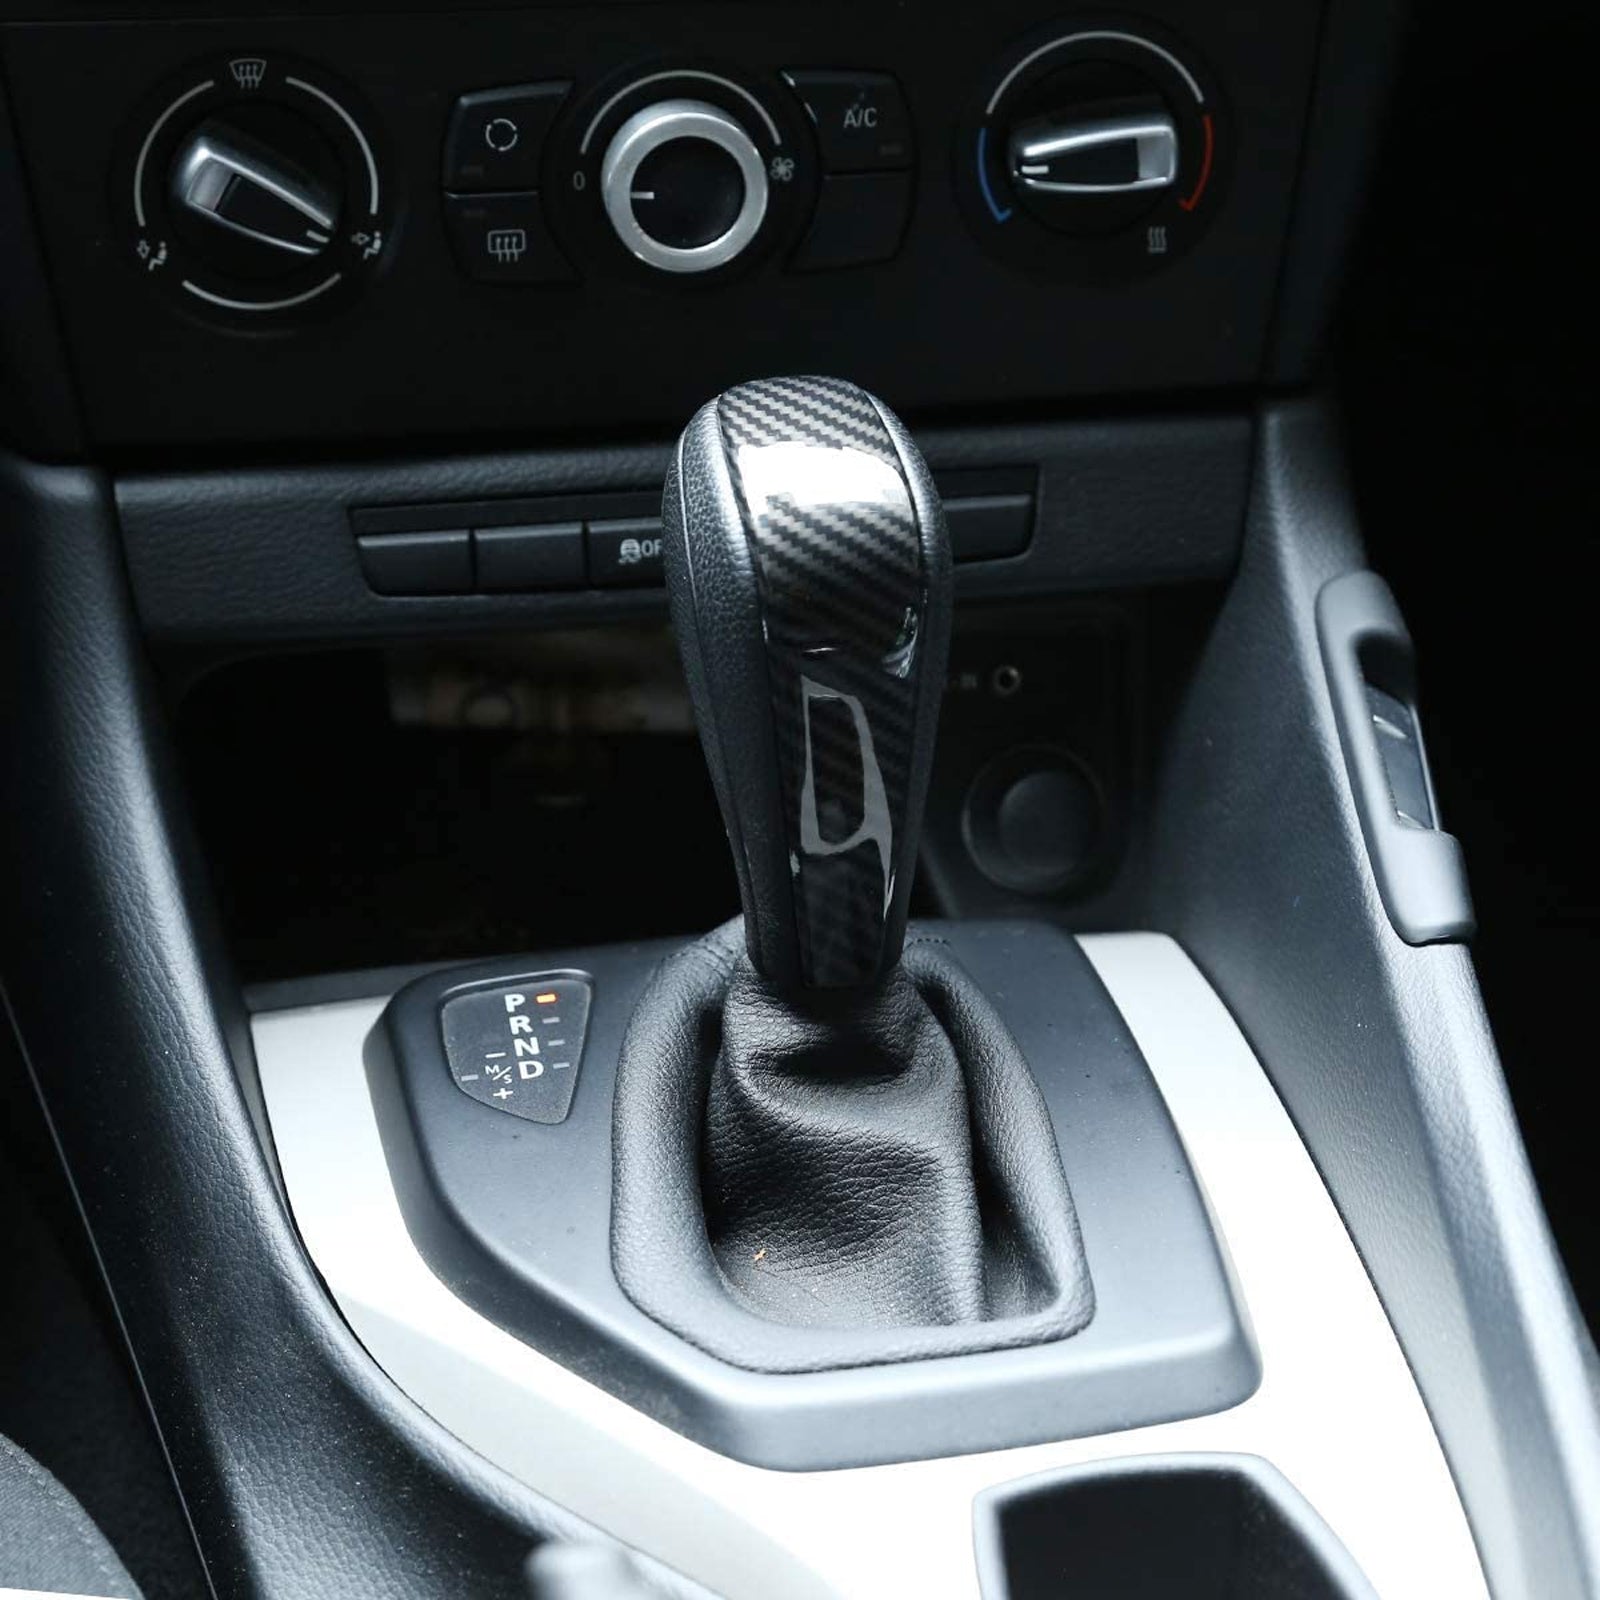 Kaufe Carbon Fiber Gear Shift Knob Head Cover Trim For BMW 3